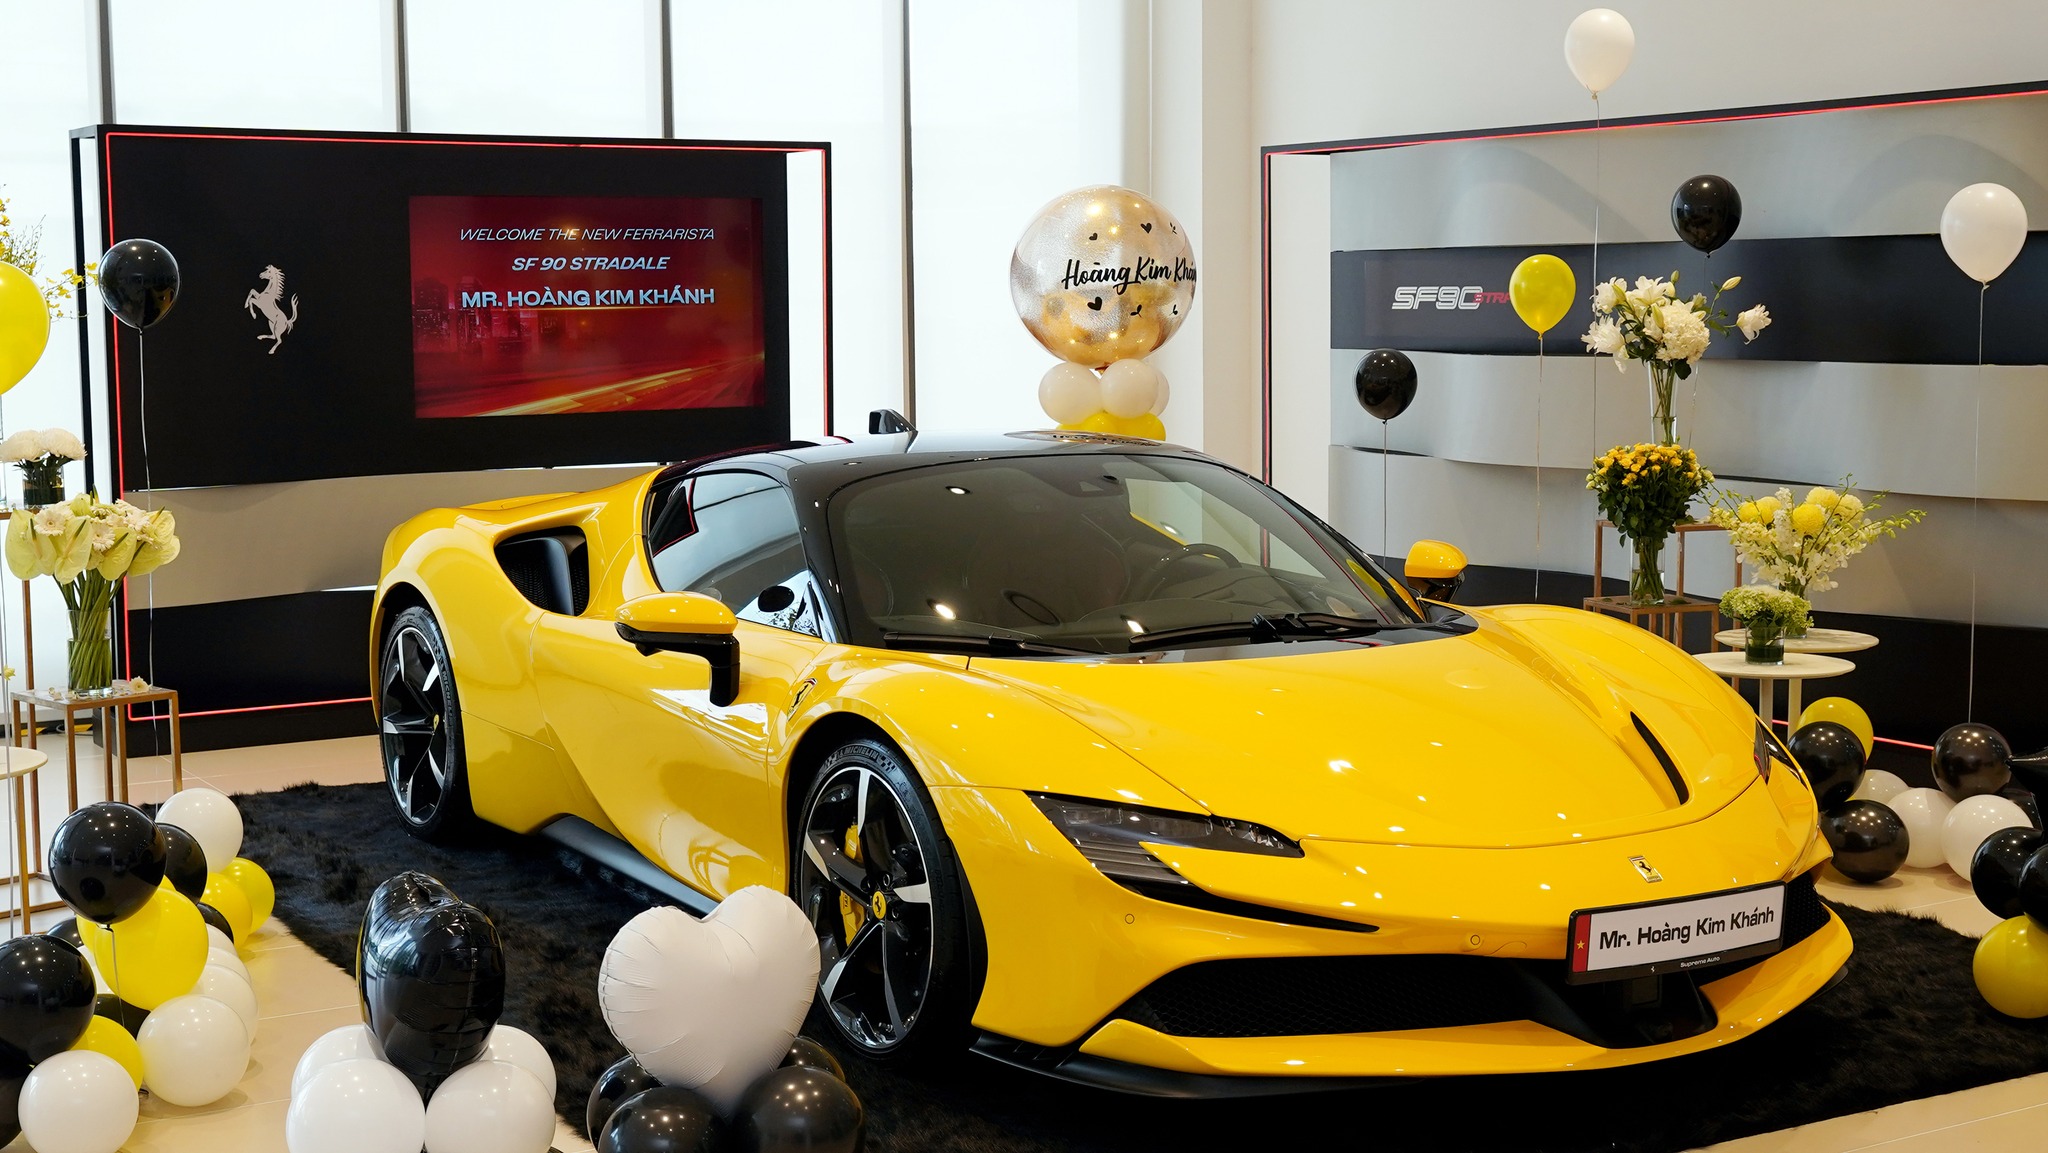 Doanh nhân Hoàng Kim Khánh tậu Ferrari SF90 Stradale trị giá hơn 40 tỷ sf90-hkk-autodaily-8.jpg